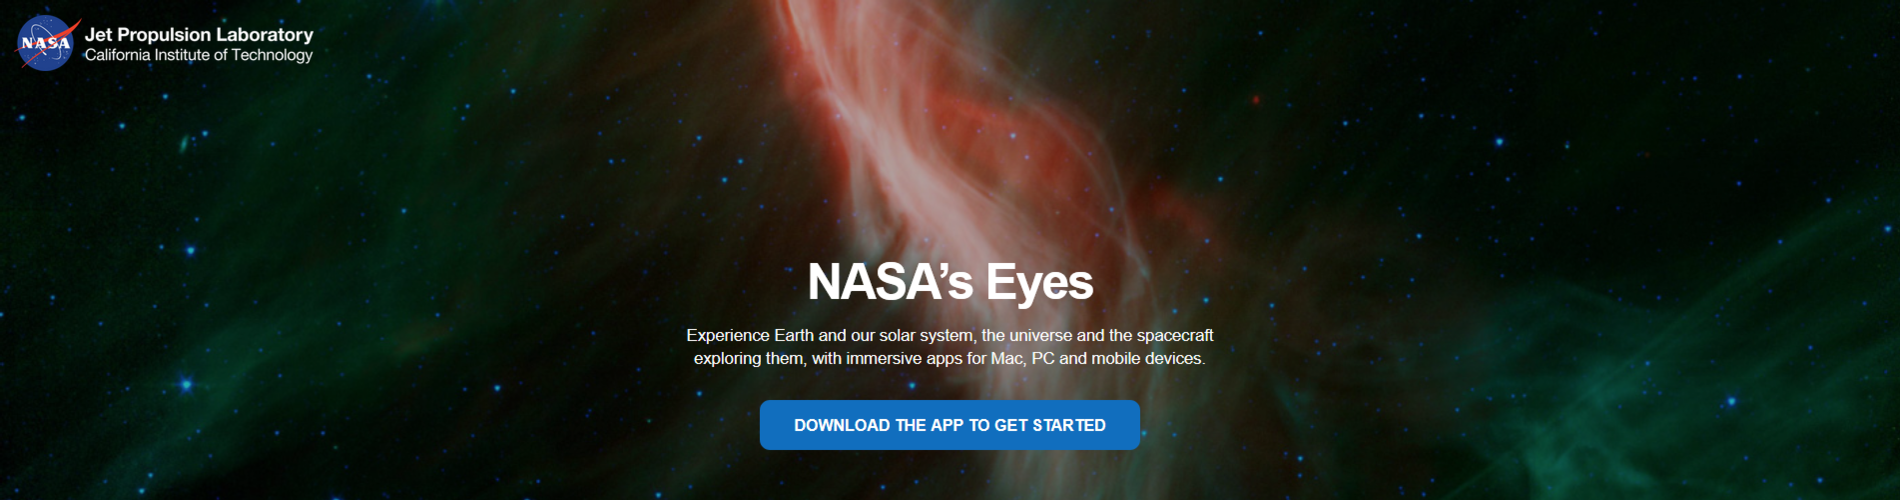 Screenshot_2021-02-11 NASA’s Eyes.png